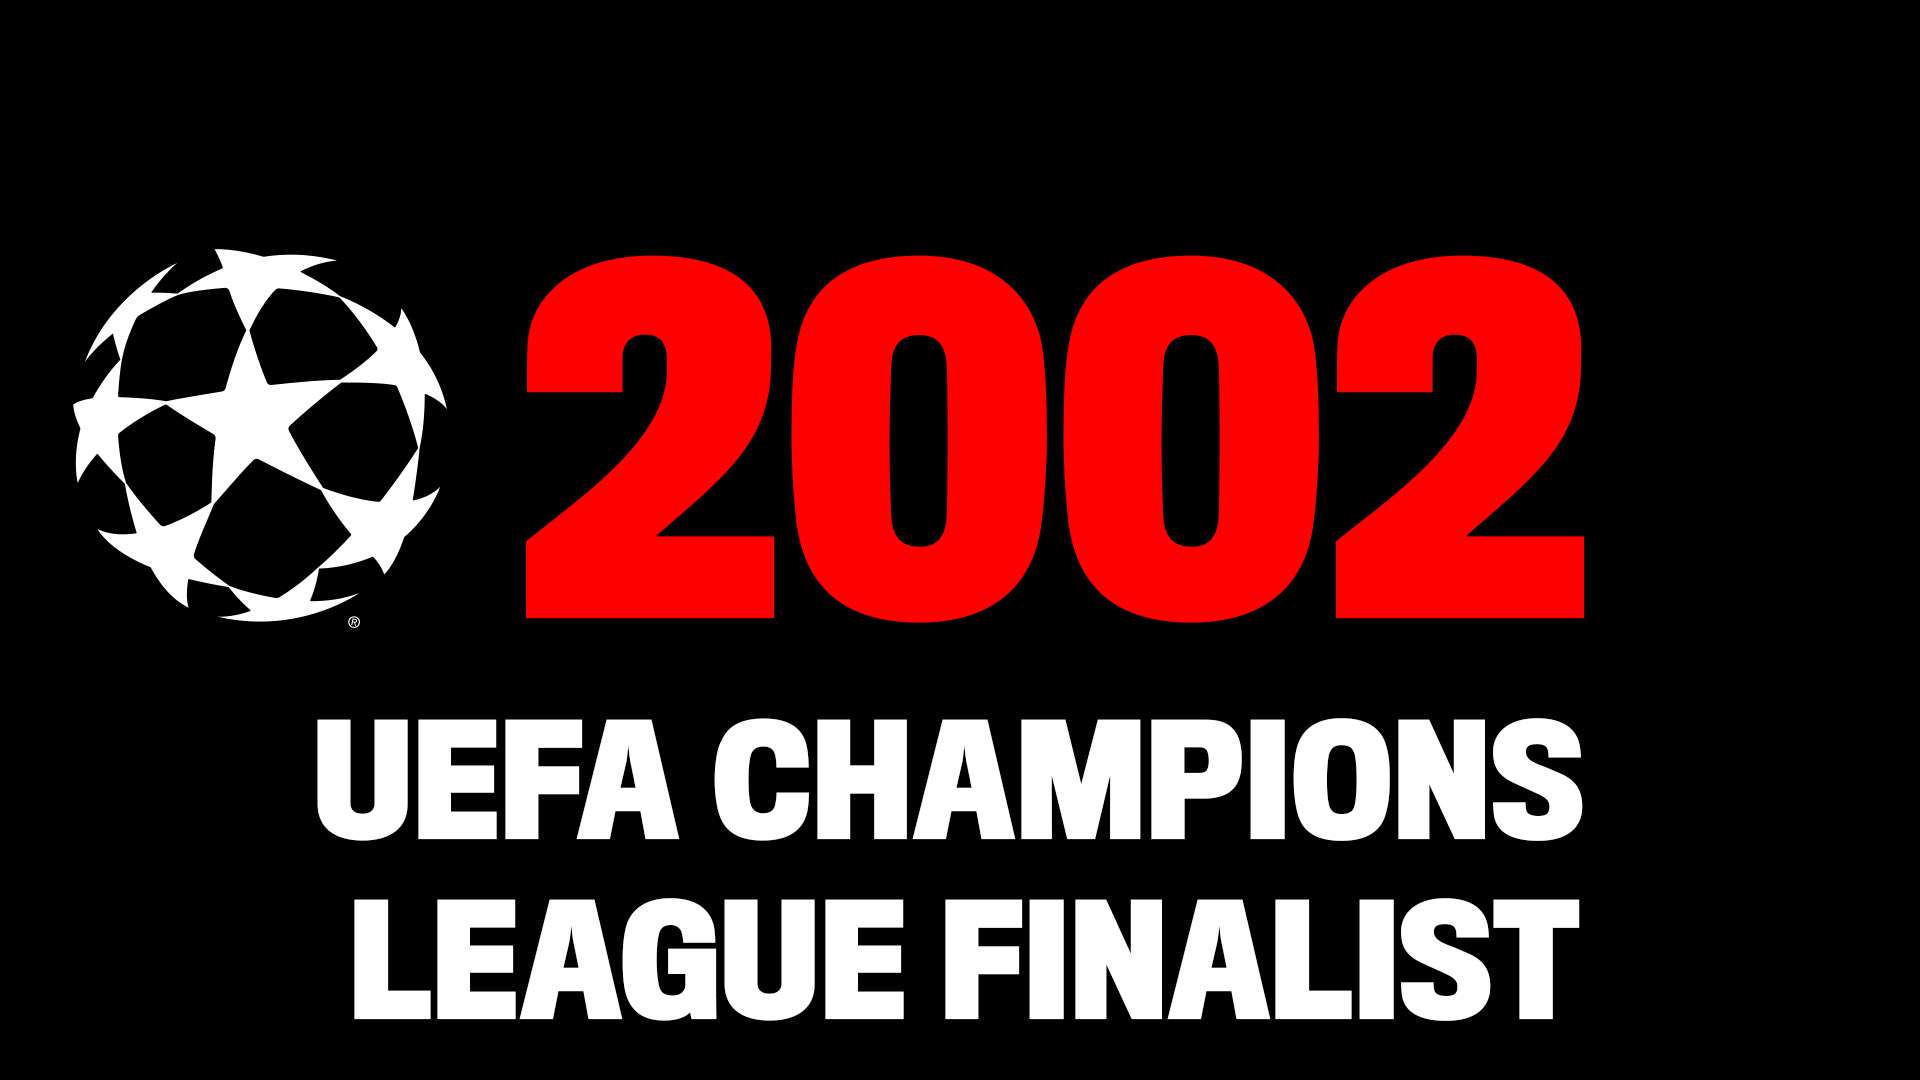 Facts Champions League finalist